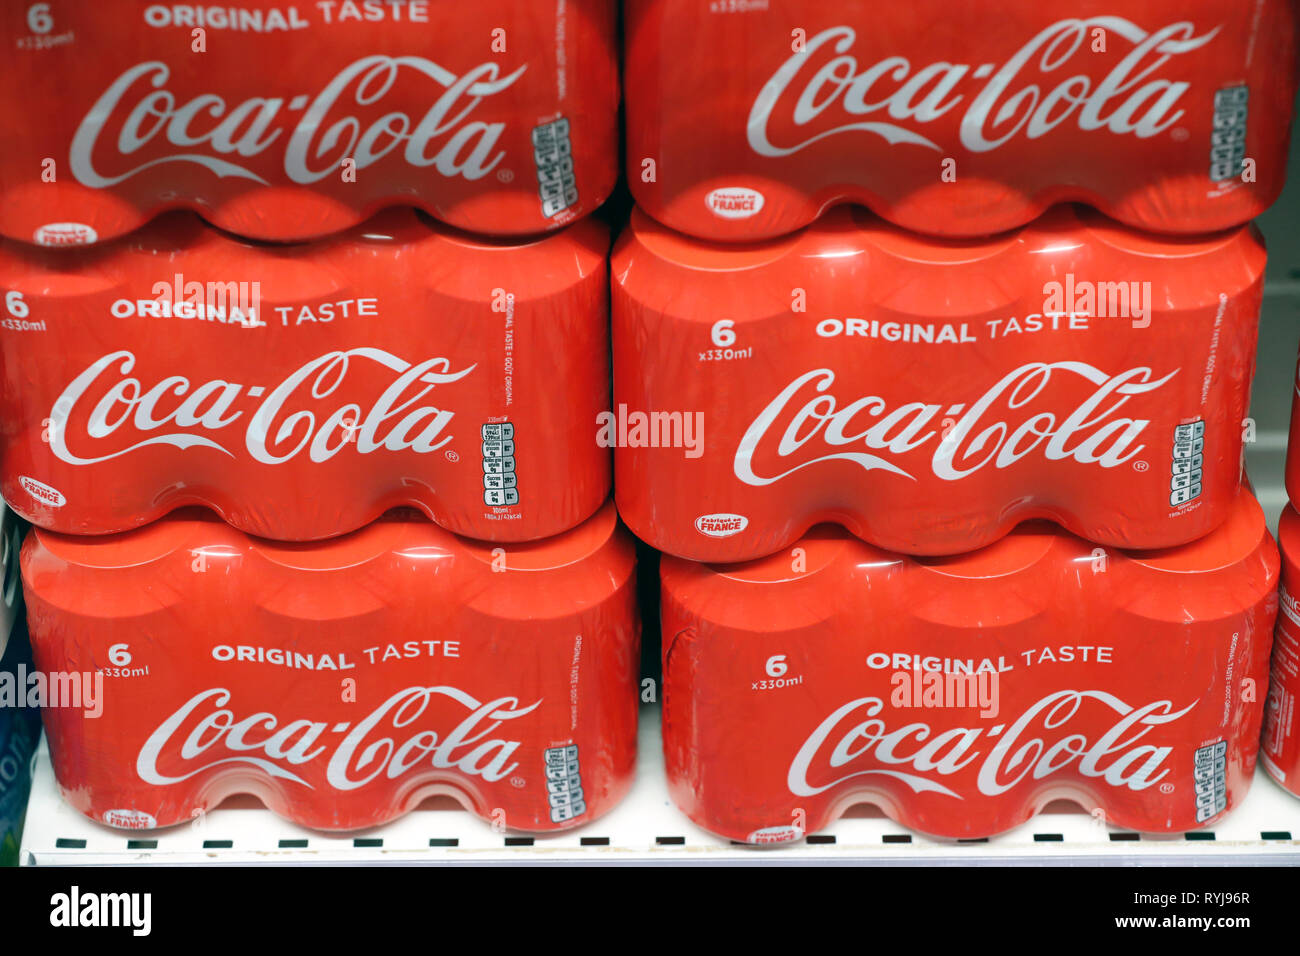 Cale en ligne au supermarché. Les boissons gazeuses. Coca Cola. La France. Banque D'Images